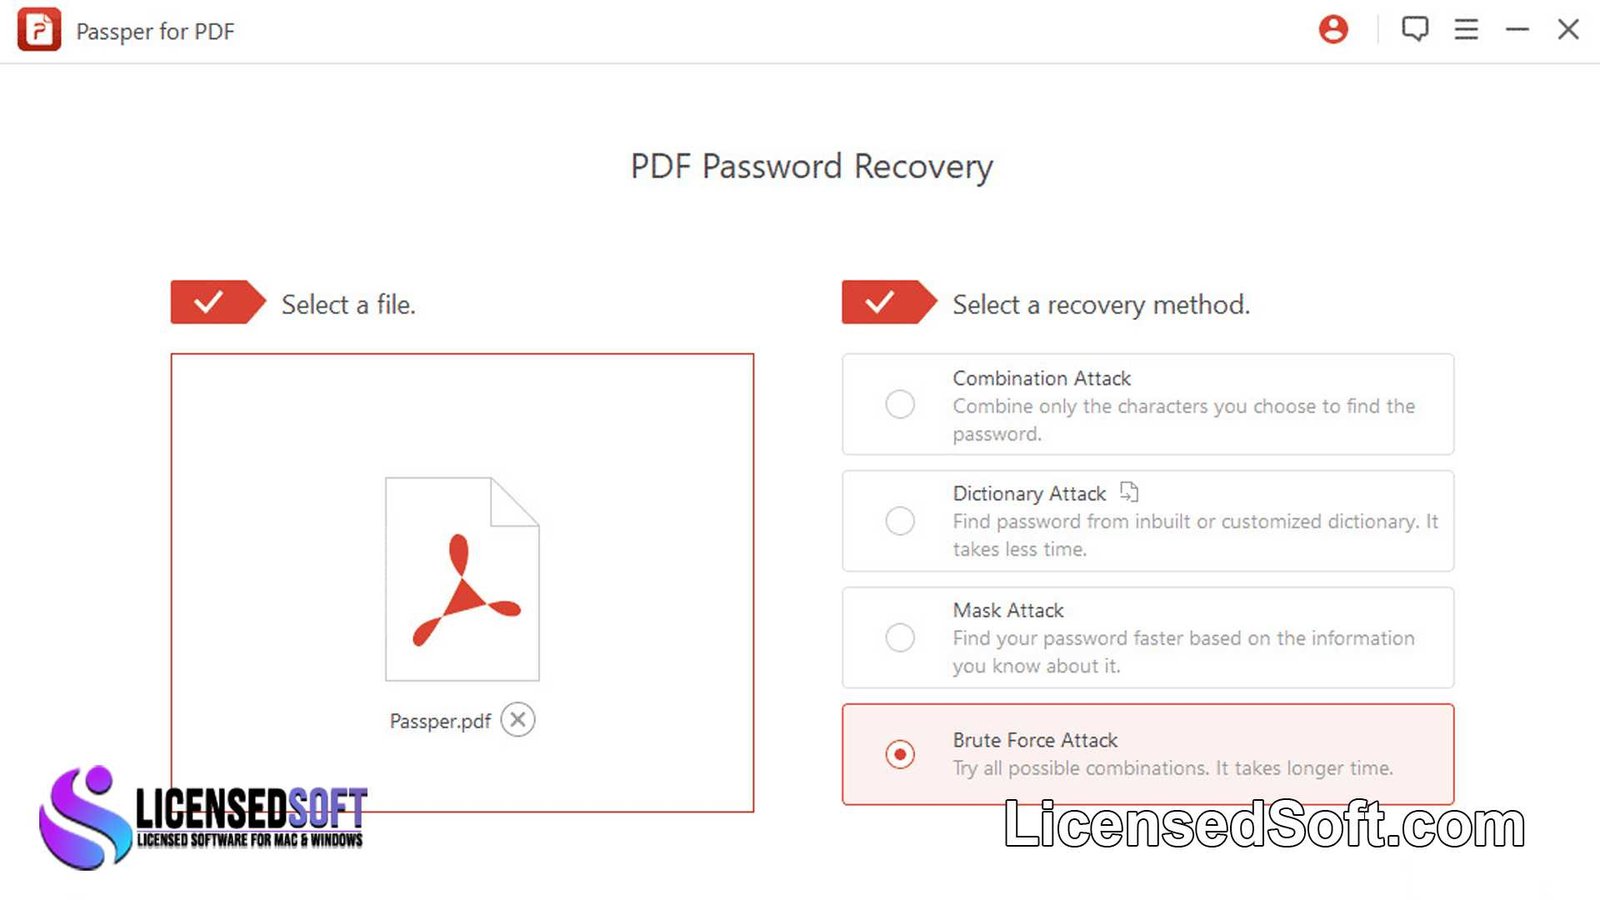 Passper for PDF 3.9.3.1 Lifetime License By LicensedSoft